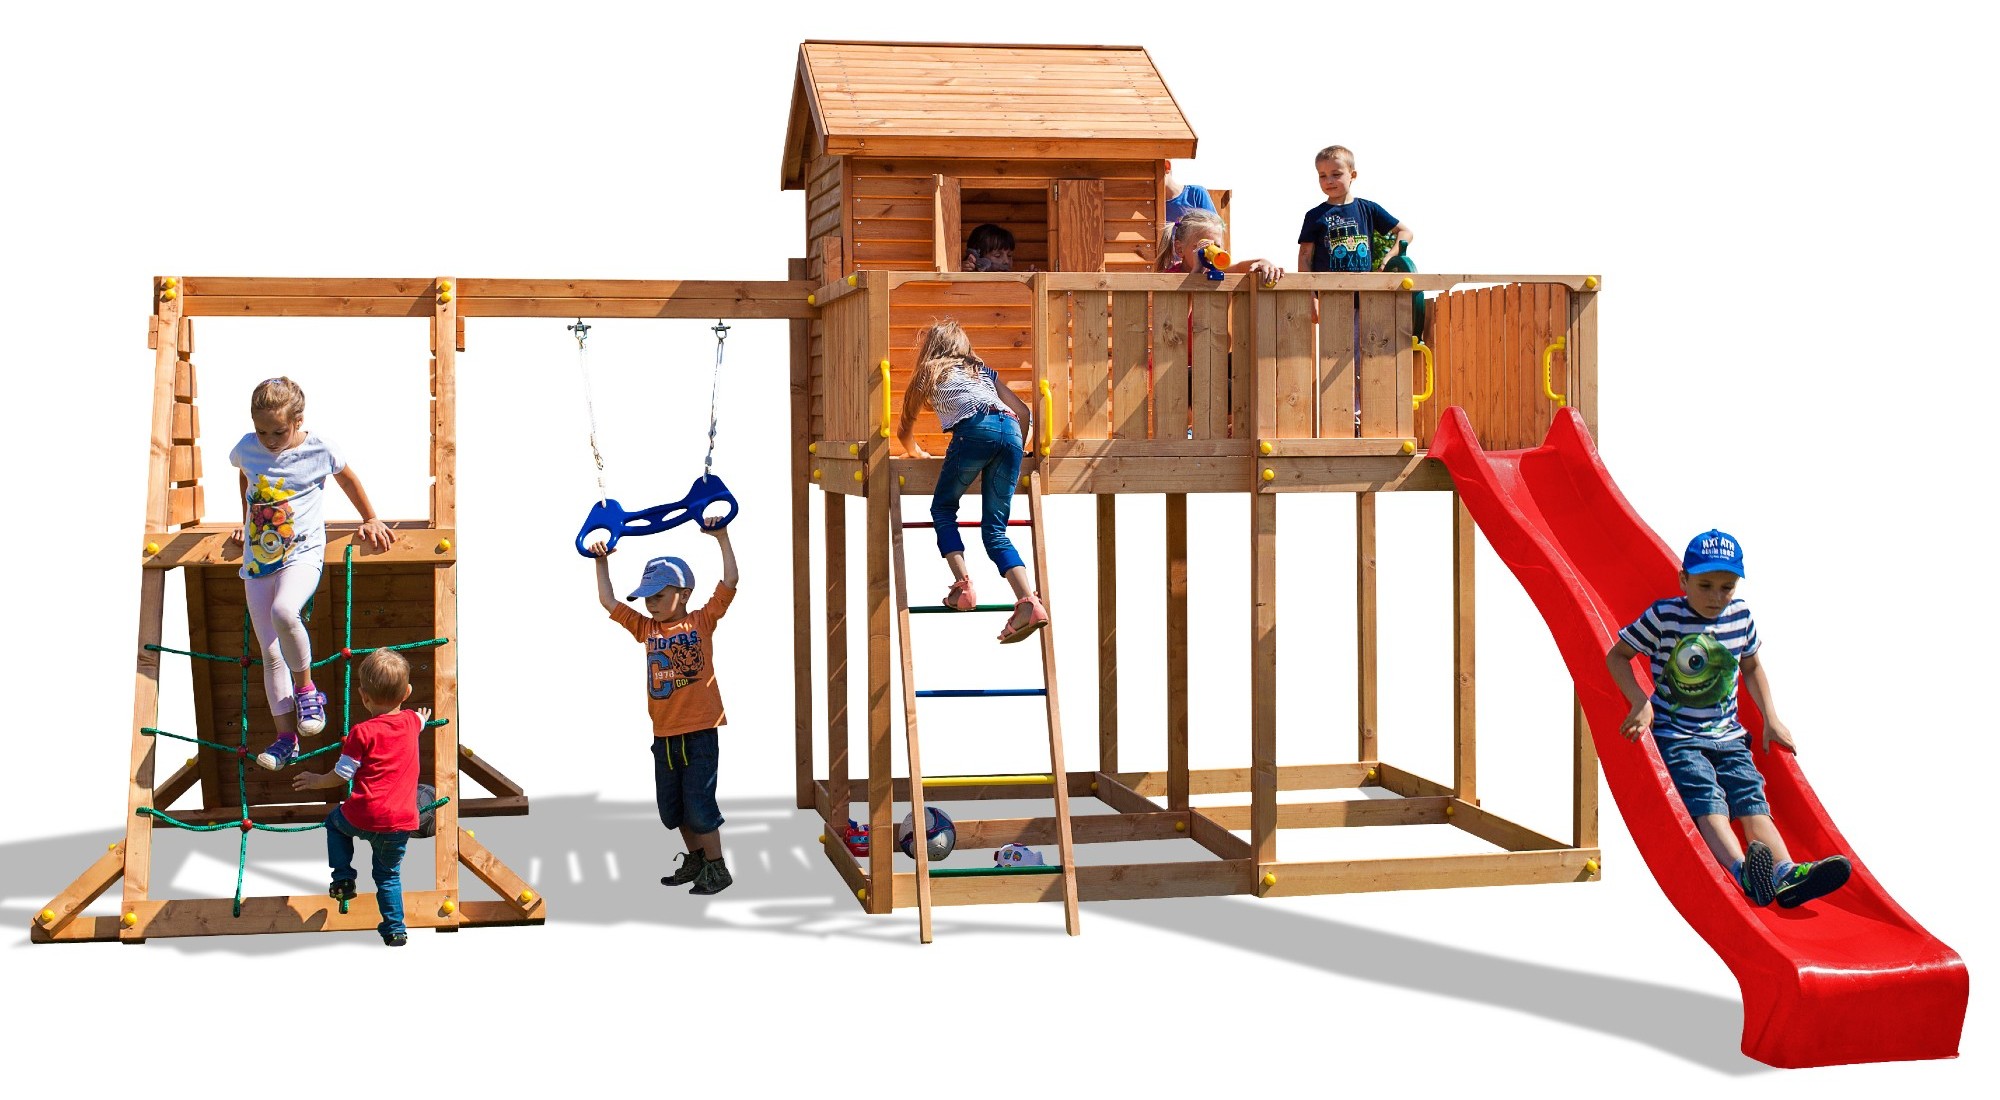 Plac zabaw drewniany ogrodowy MySpace XL Spider domek, zjedalnia, hutawka, cianka i sie wspinaczkowa, drabinka, ster